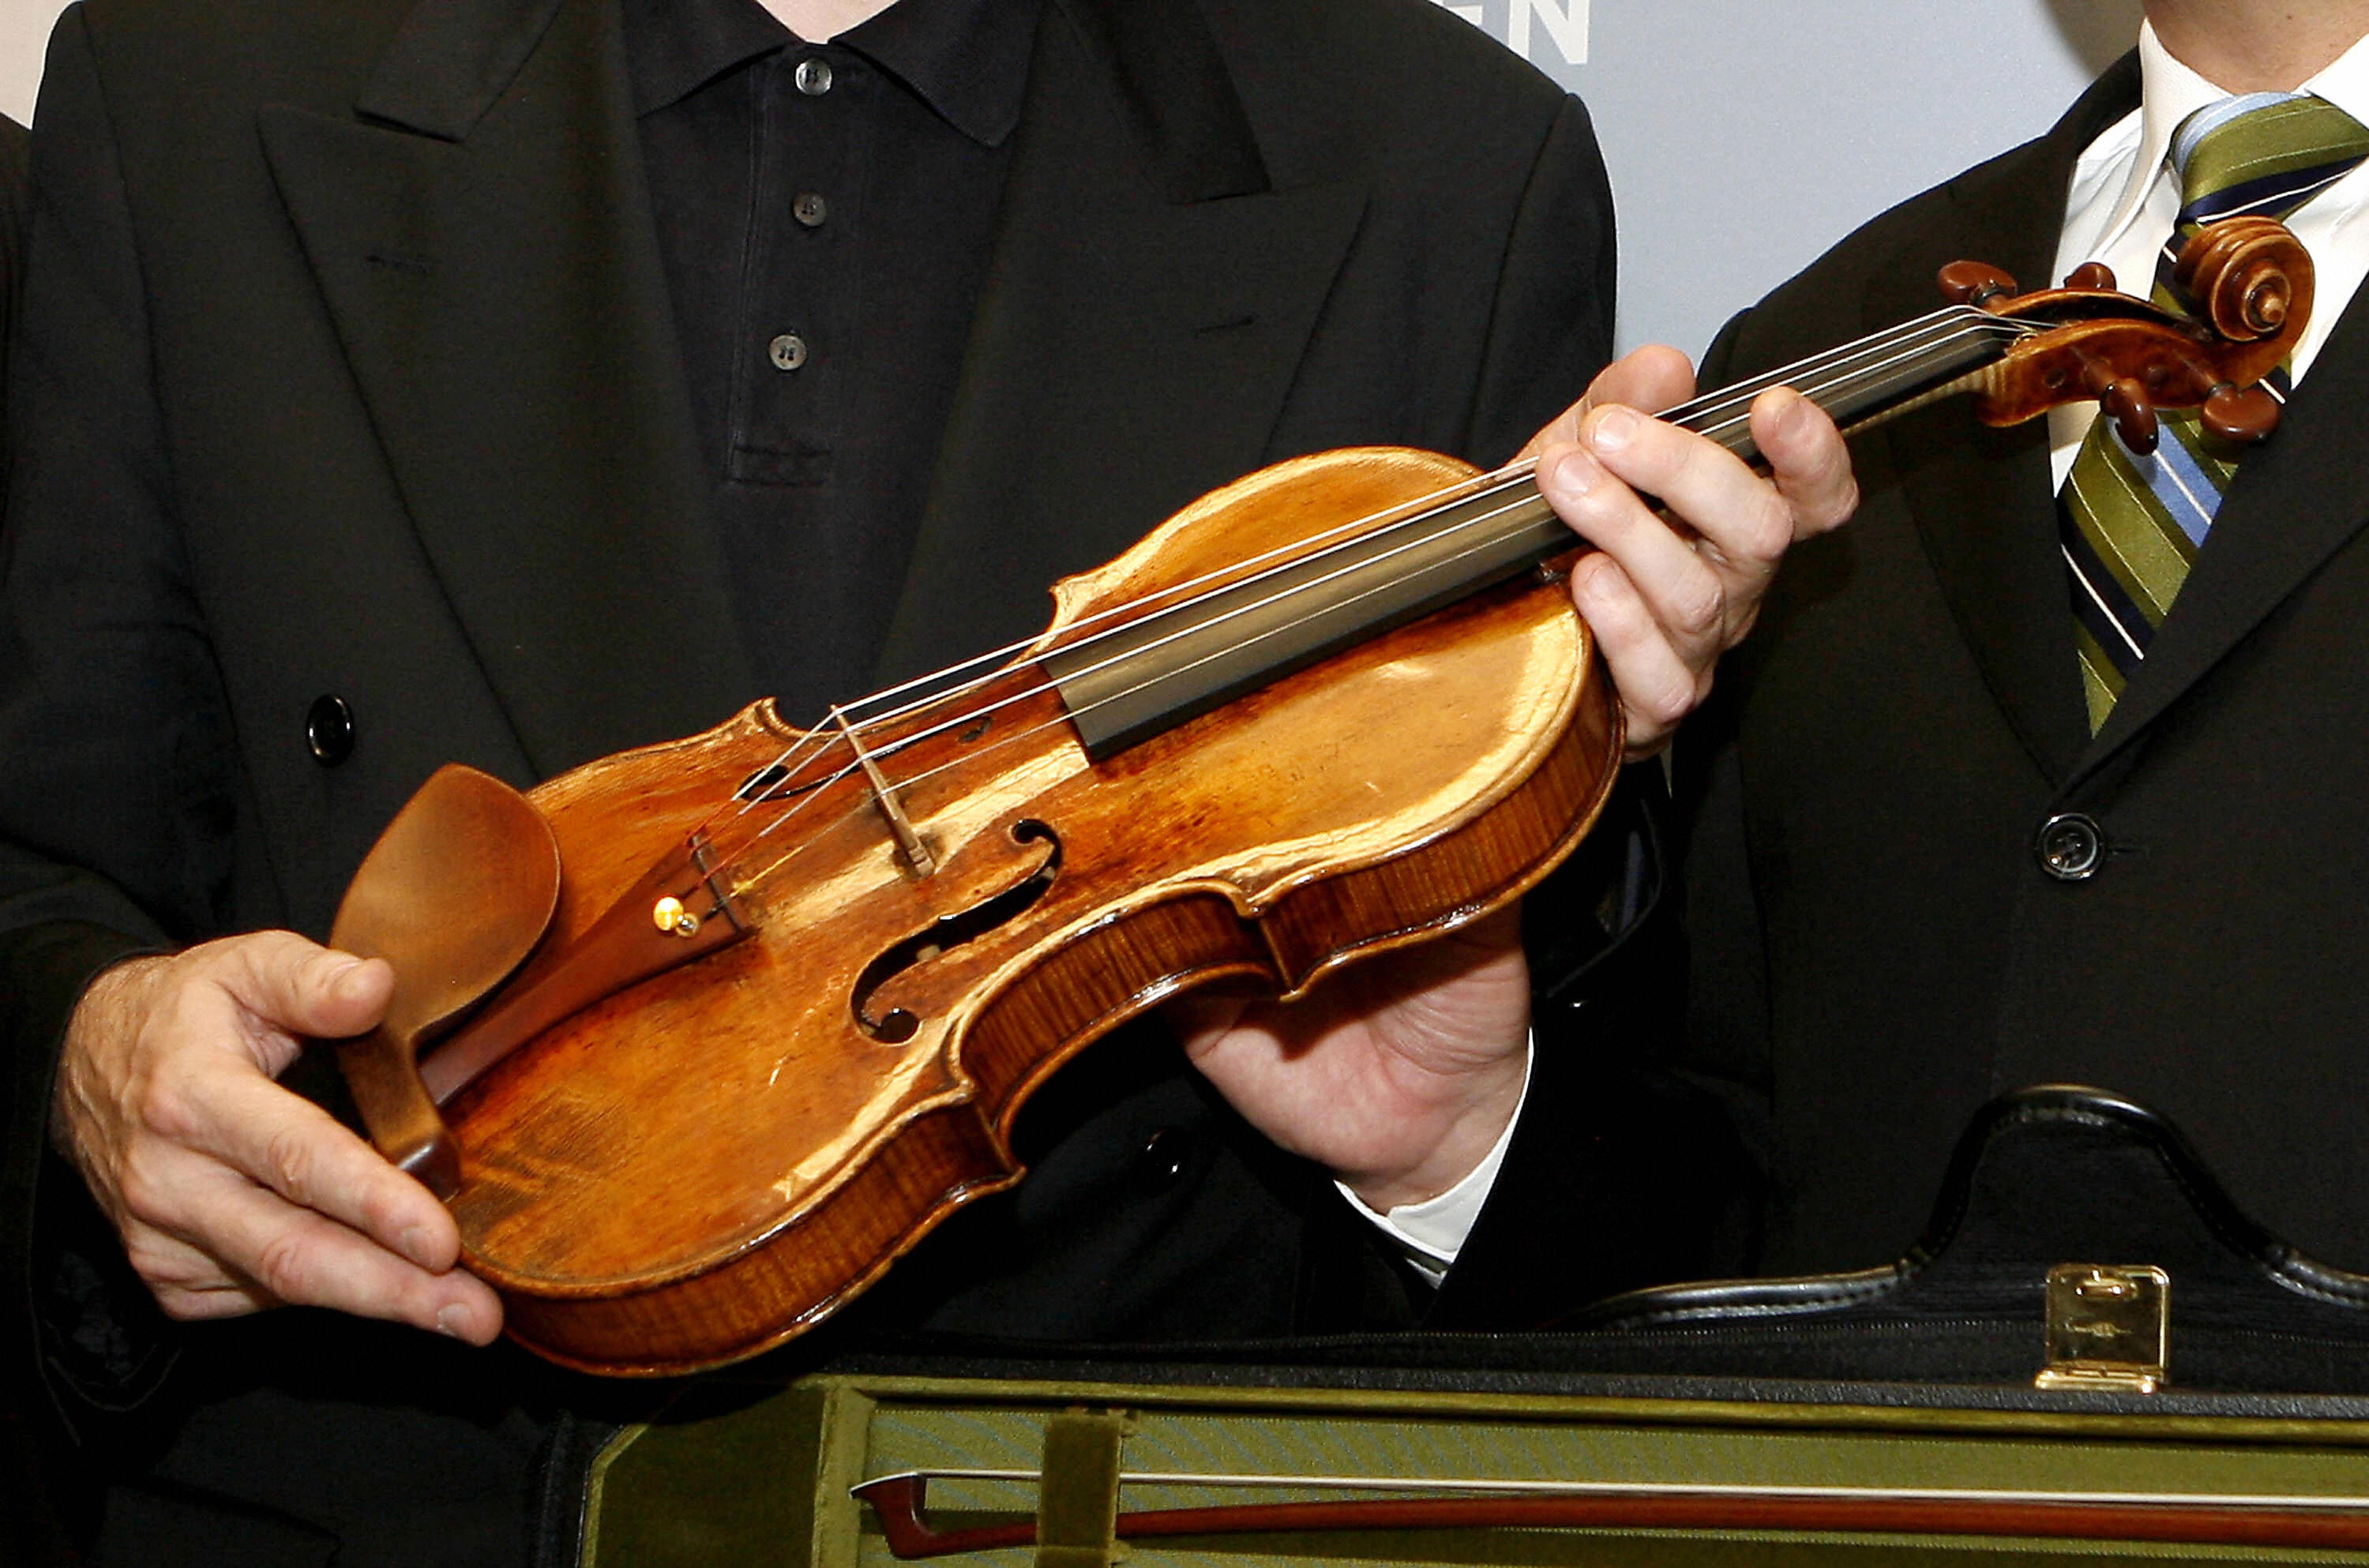 Самая известная скрипка. Скрипка Антонио Страдивари. Инструменты Антонио Страдивари. Антонио Страдивари музыкант. Страдивари мастер скрипок.